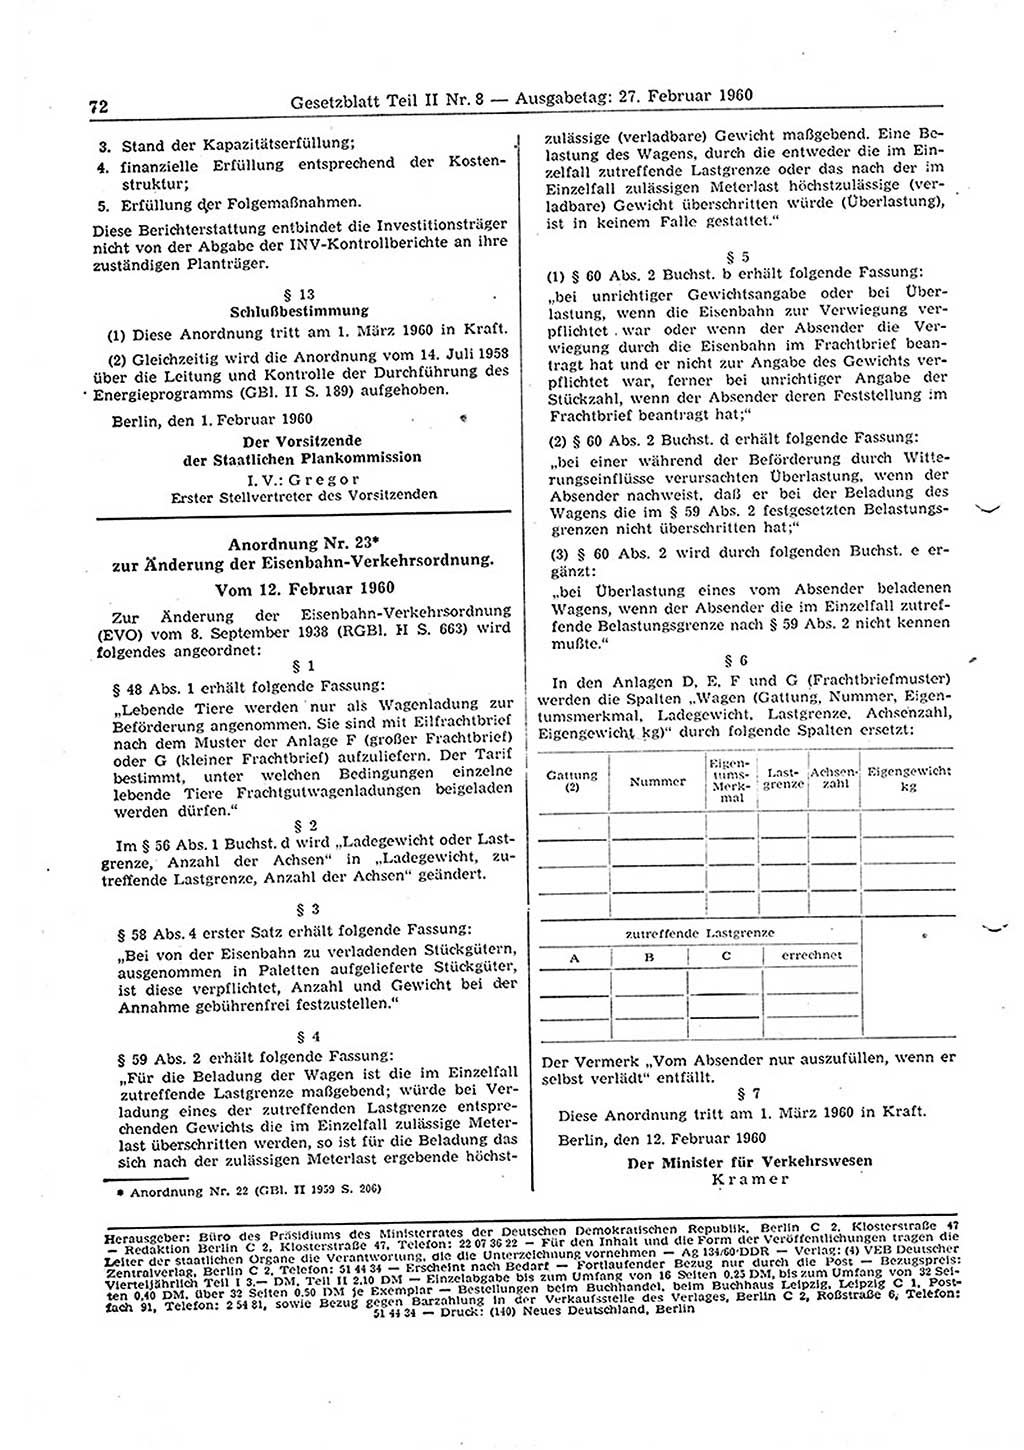 Gesetzblatt (GBl.) der Deutschen Demokratischen Republik (DDR) Teil ⅠⅠ 1960, Seite 72 (GBl. DDR ⅠⅠ 1960, S. 72)